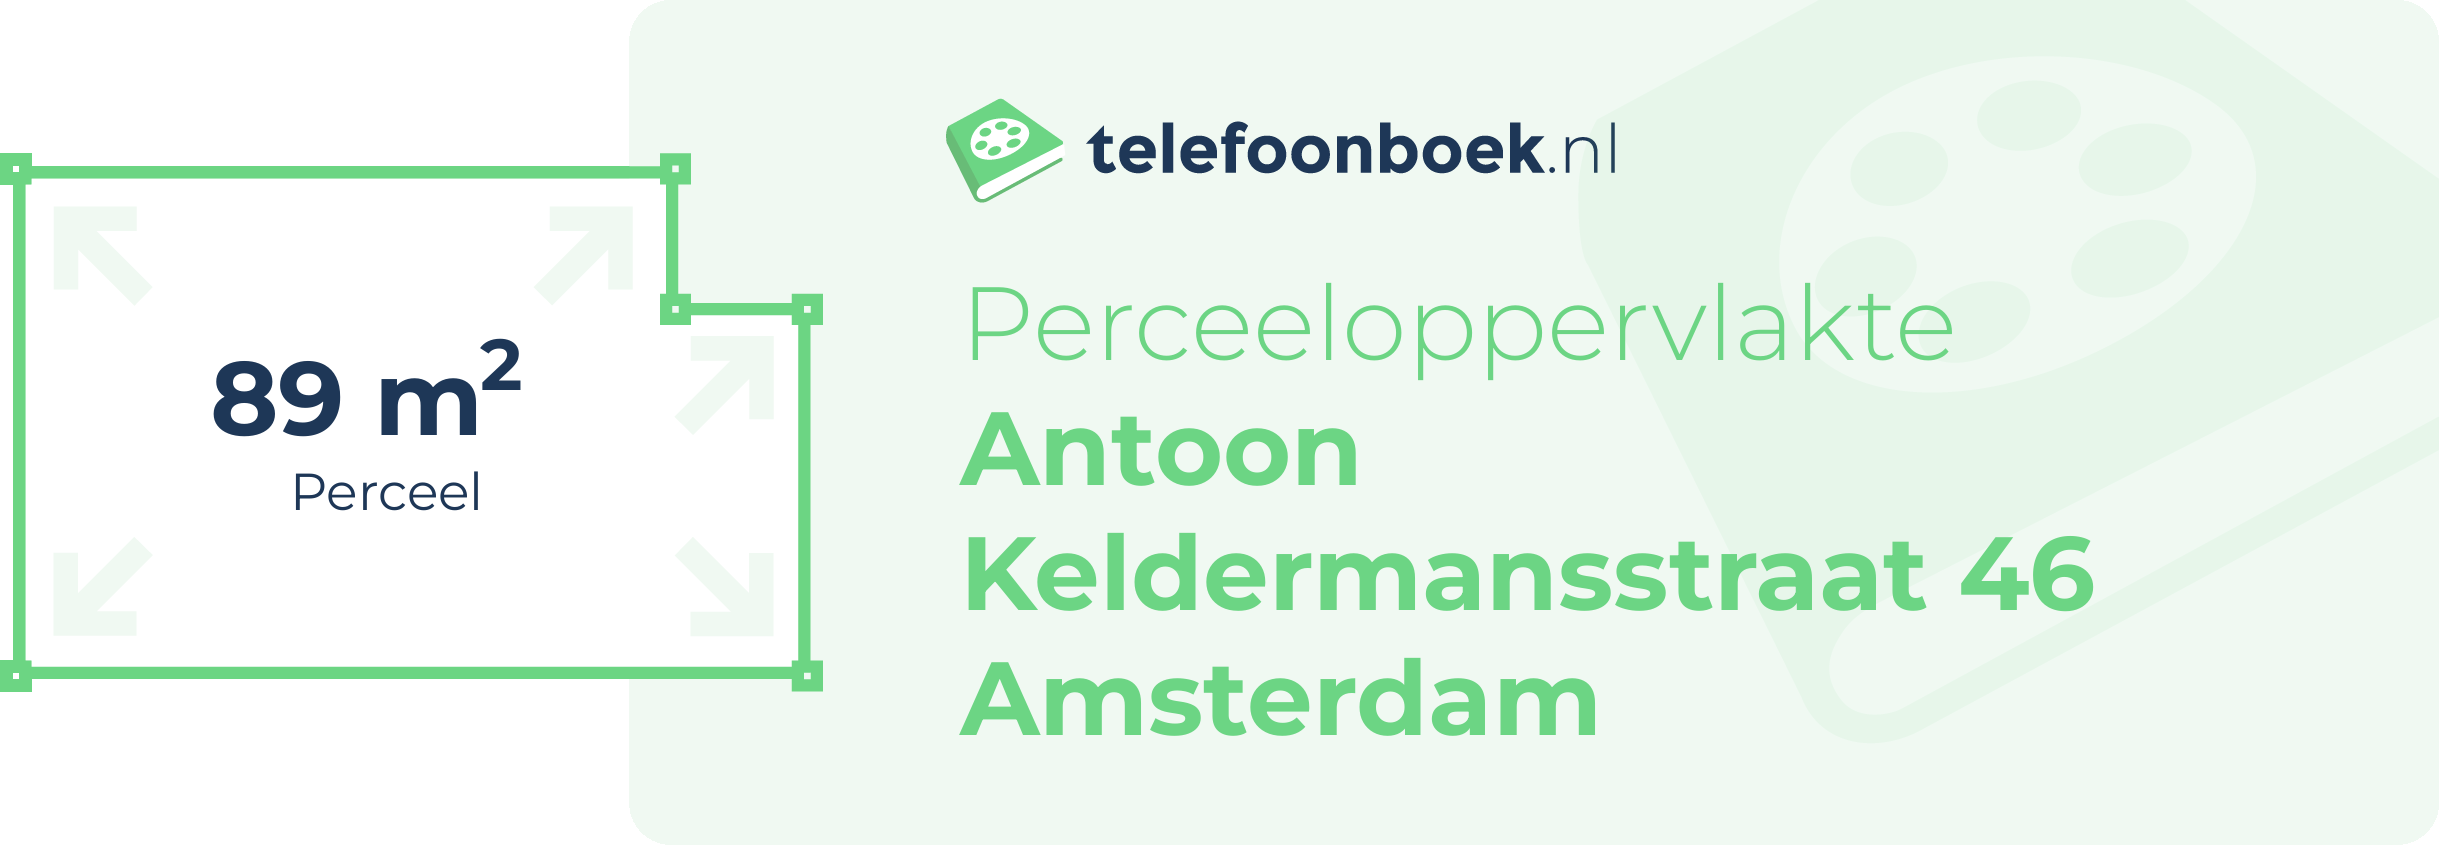 Perceeloppervlakte Antoon Keldermansstraat 46 Amsterdam